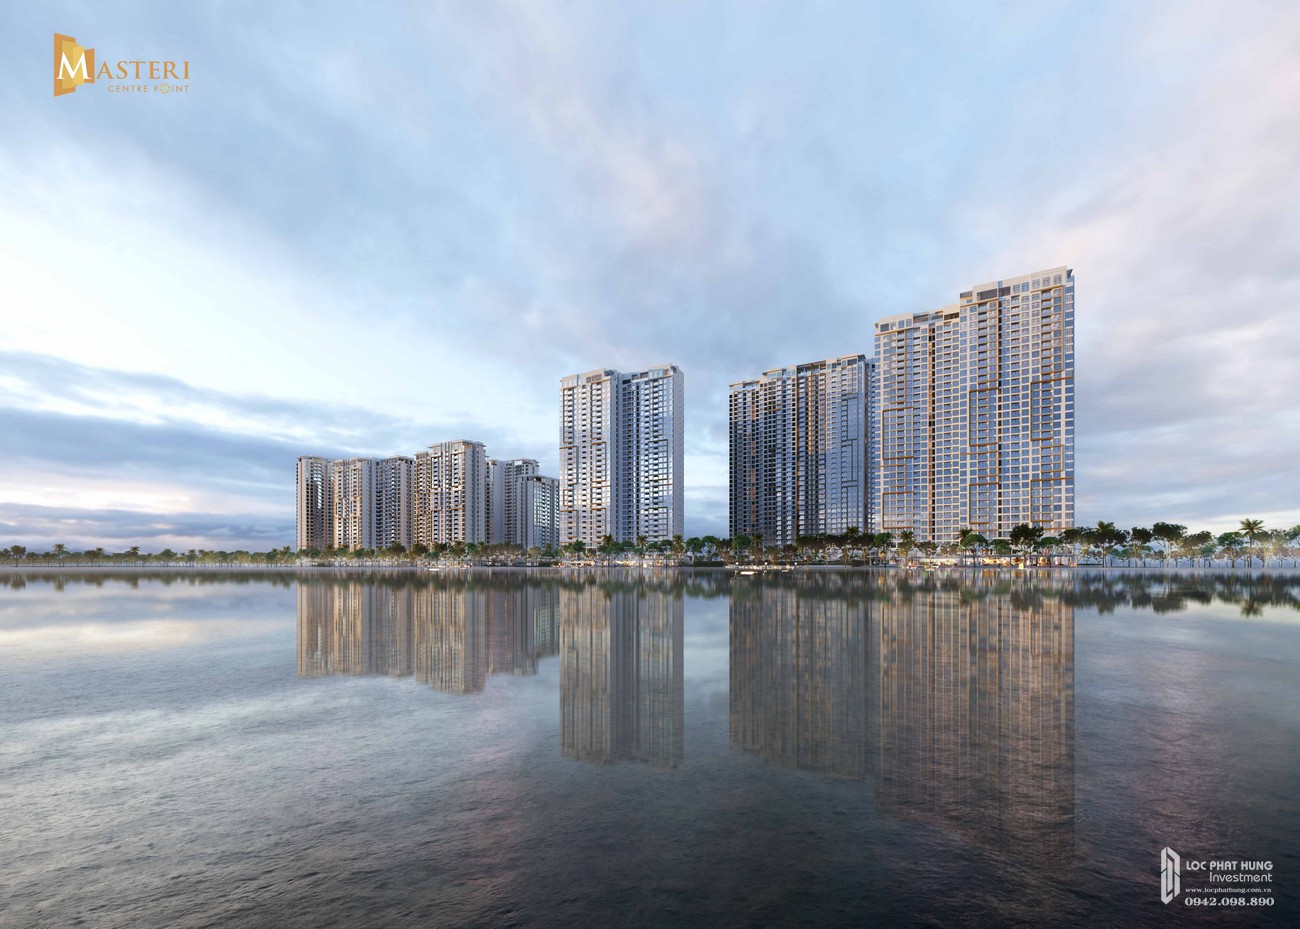 Mua bán cho thuê dự án căn hộ chung cư Masteri Centre Point Quận 9 Đường Nguyễn Xiển chủ đầu tư Masterise Homes